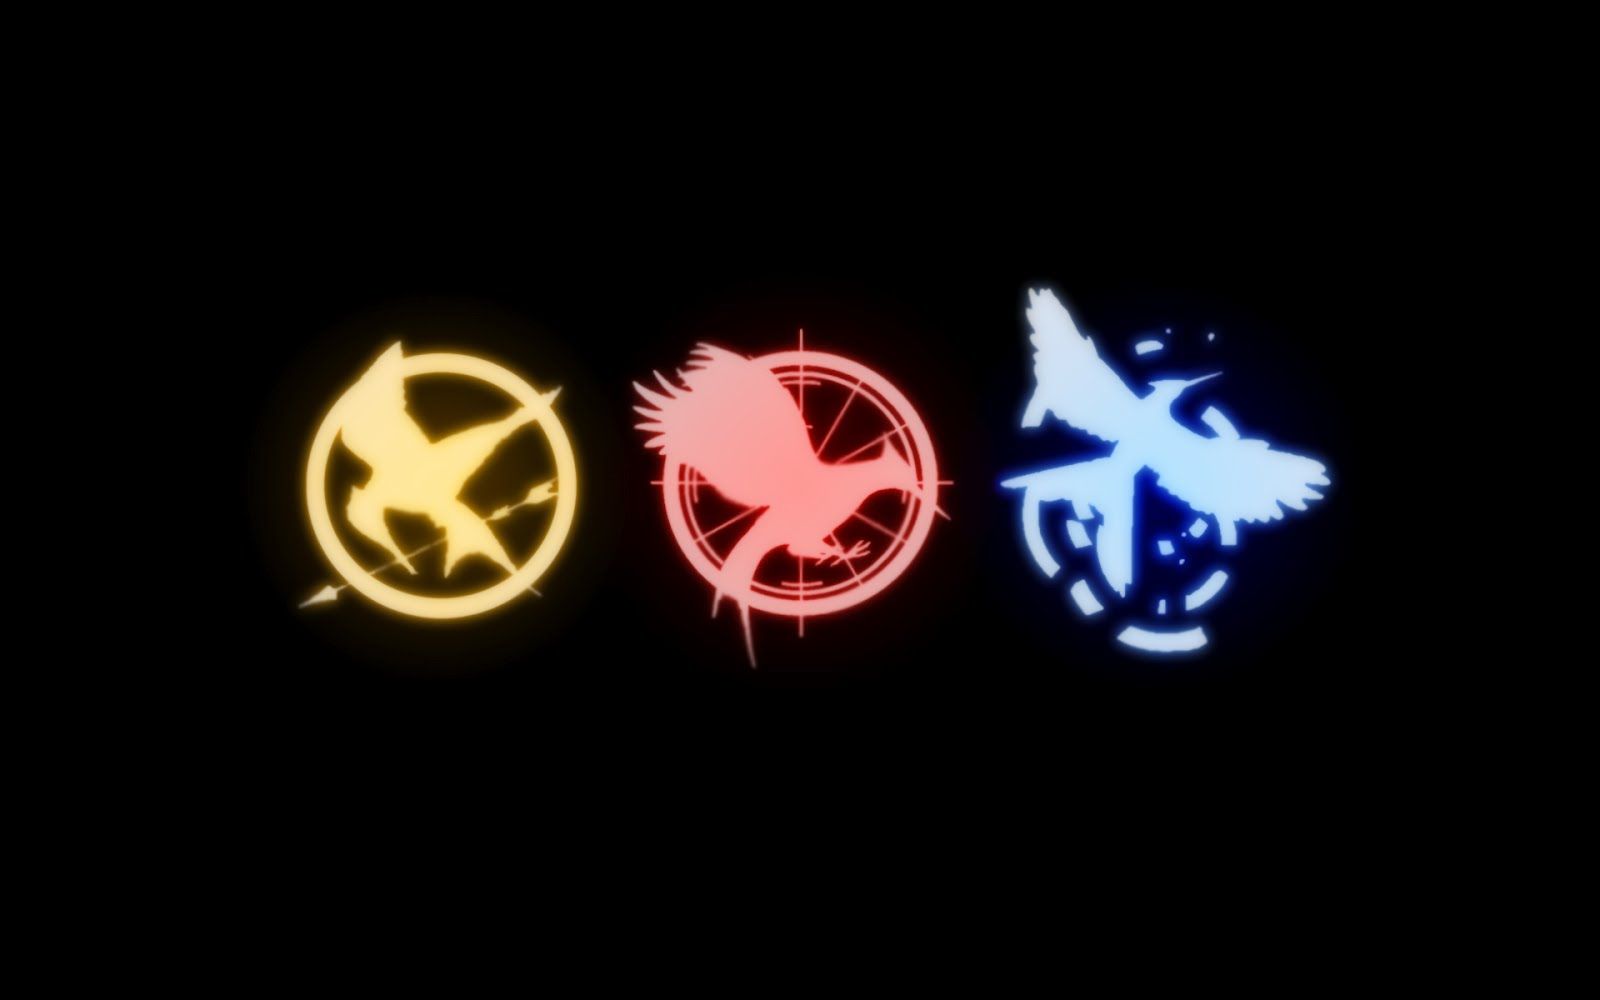 Hunger Games Desktop Backgrounds | Desktop Image